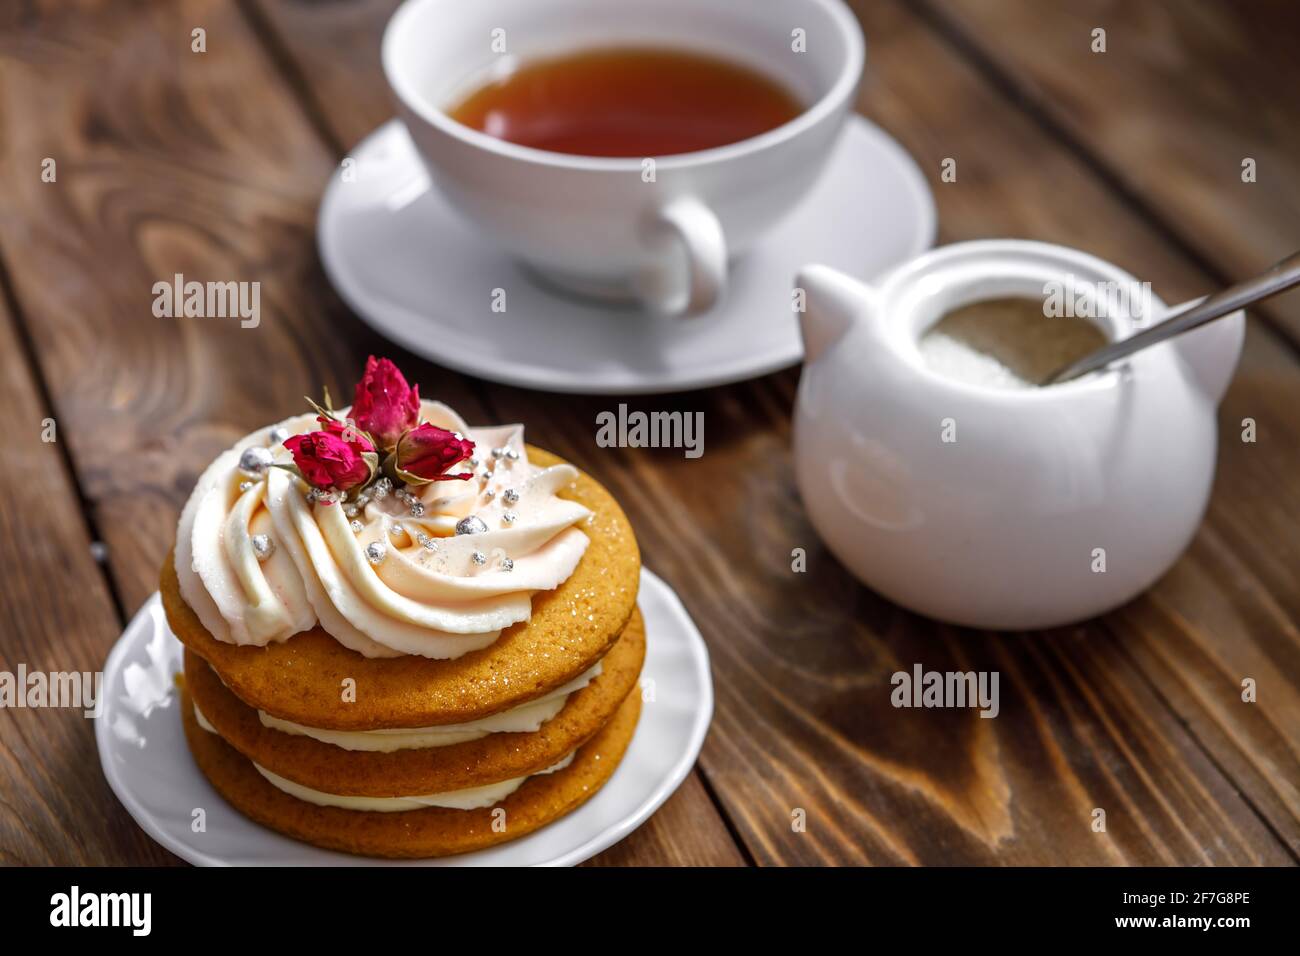 Génoise à la crème, décorée de petites fleurs et d'une tasse de thé. Le concept d'une friandise festive. Travail fait main Banque D'Images